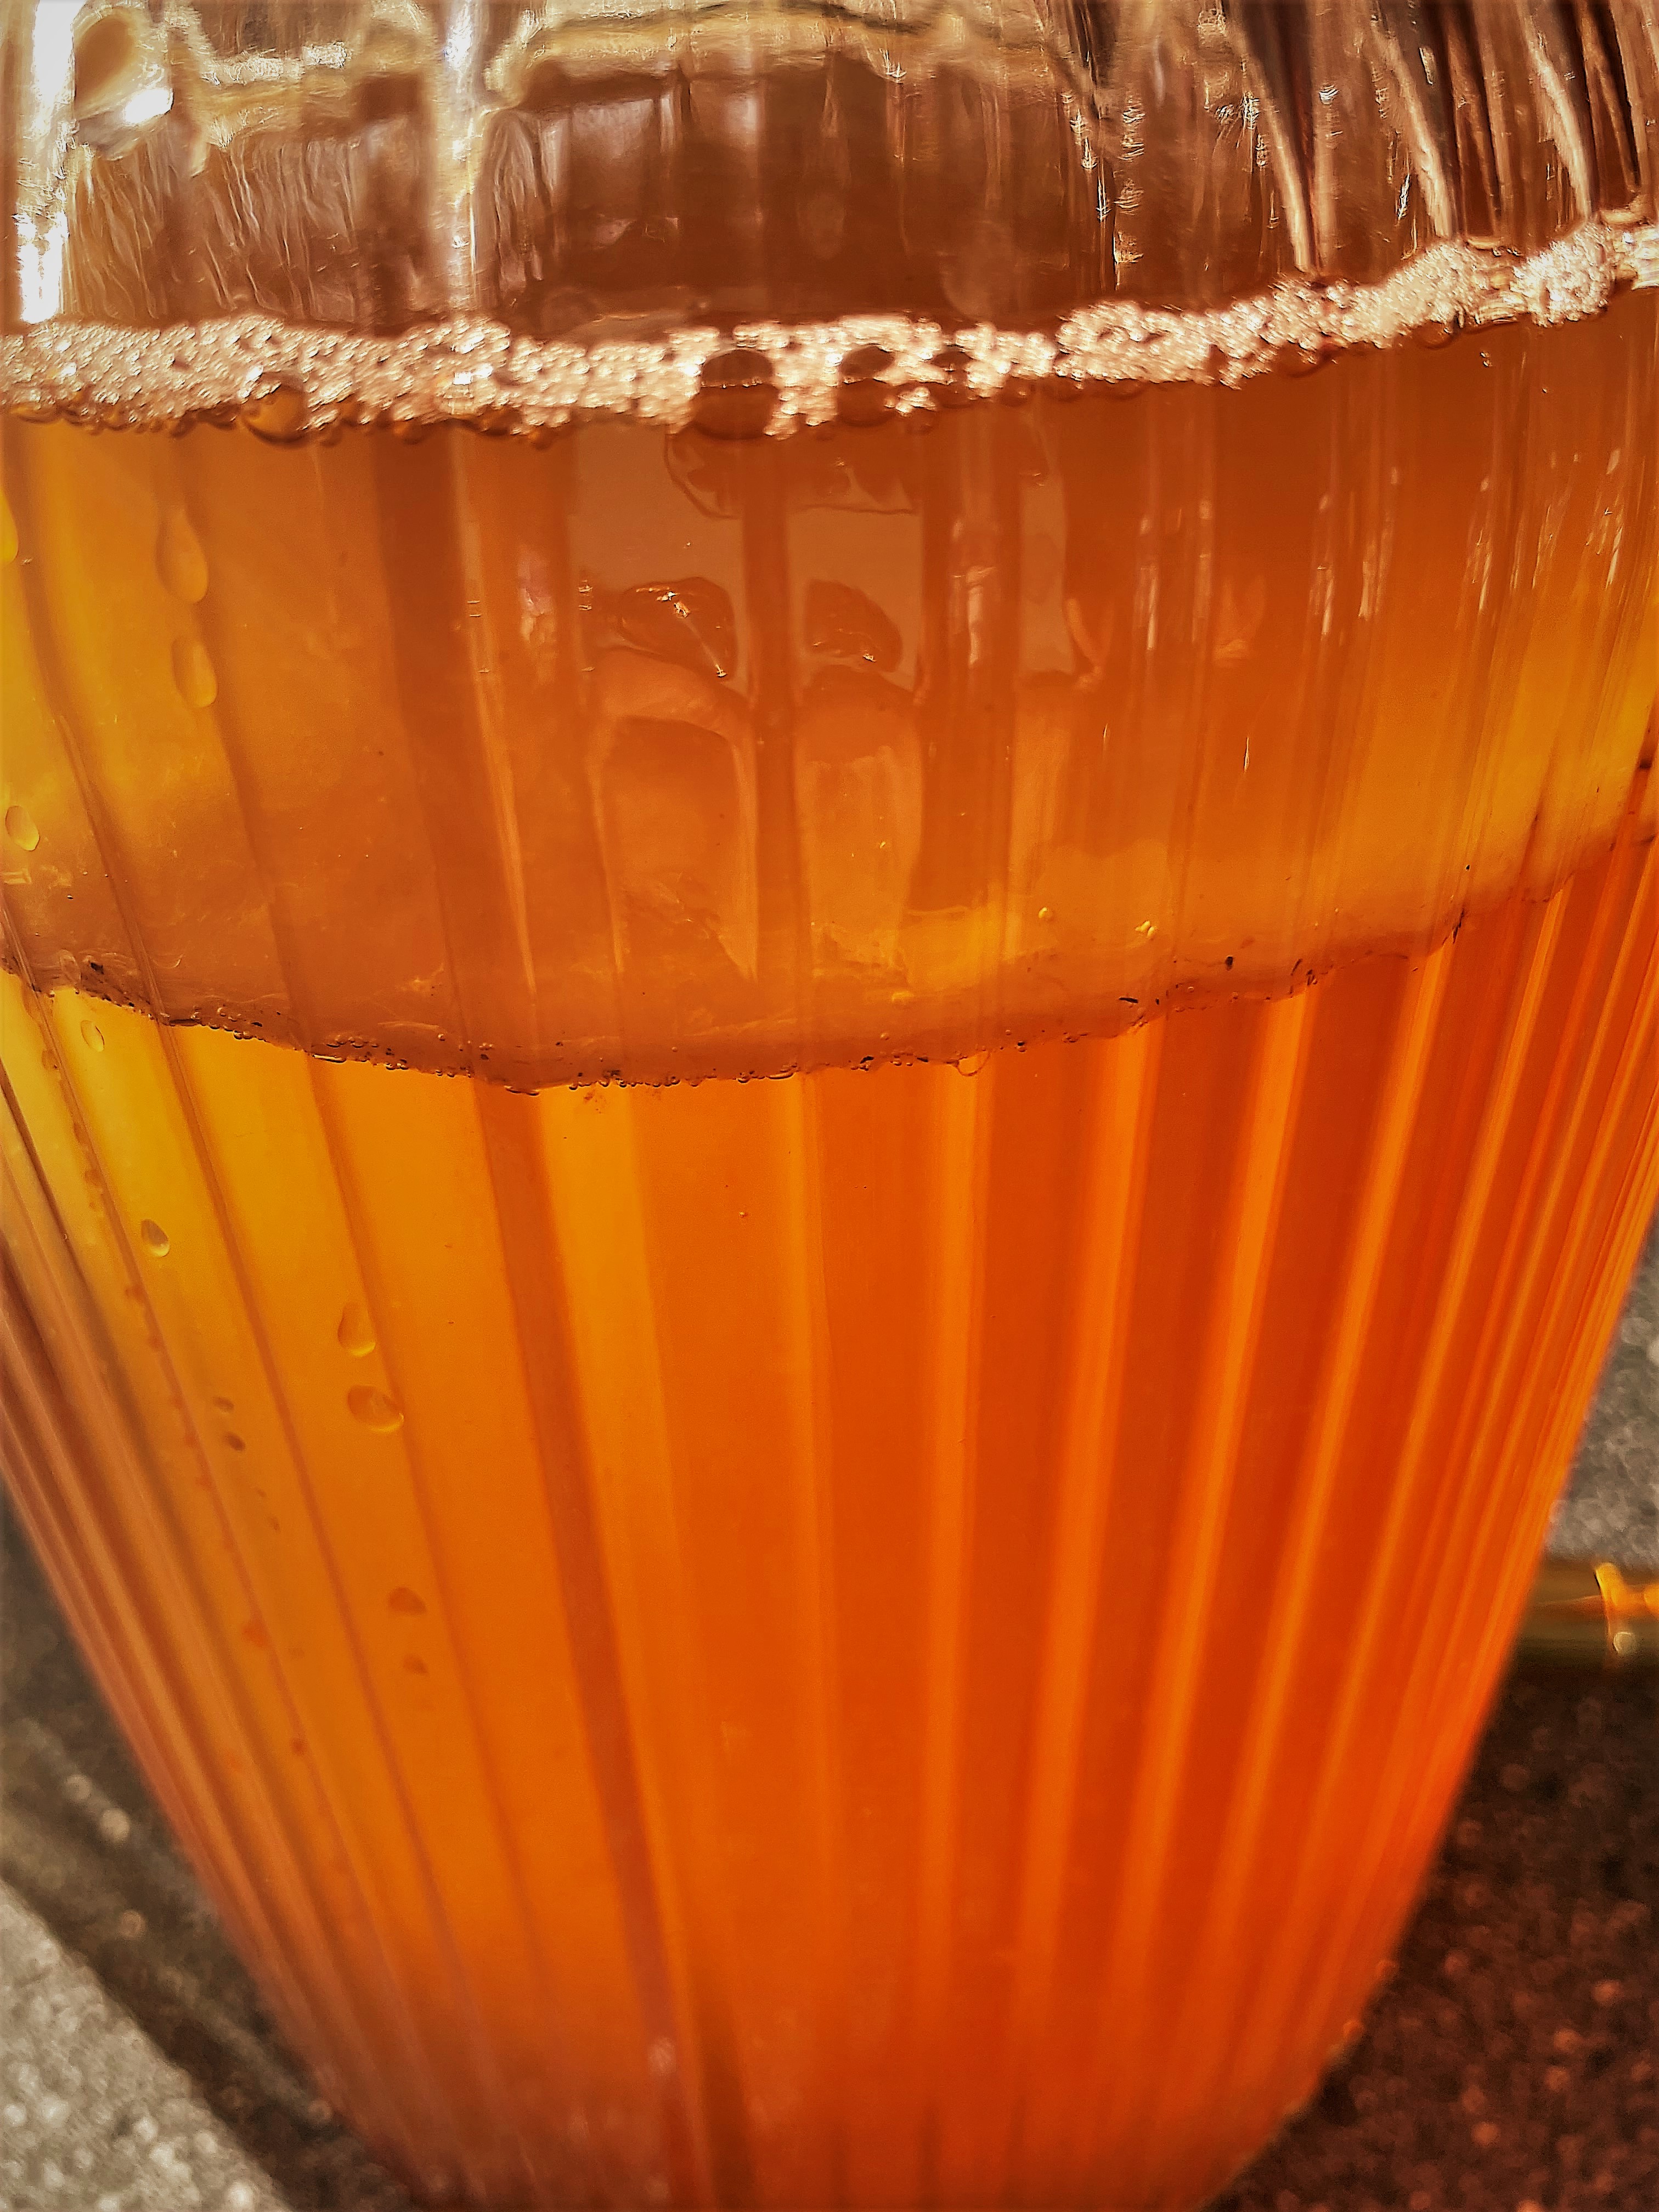 Überbrühten Tee abkühlen lassen auf unter 37 Grad Celsius und in den Glasbehälter zum Kombucha-Pilz giessen. 14-20 Tage zugedeckt rasten lassen.